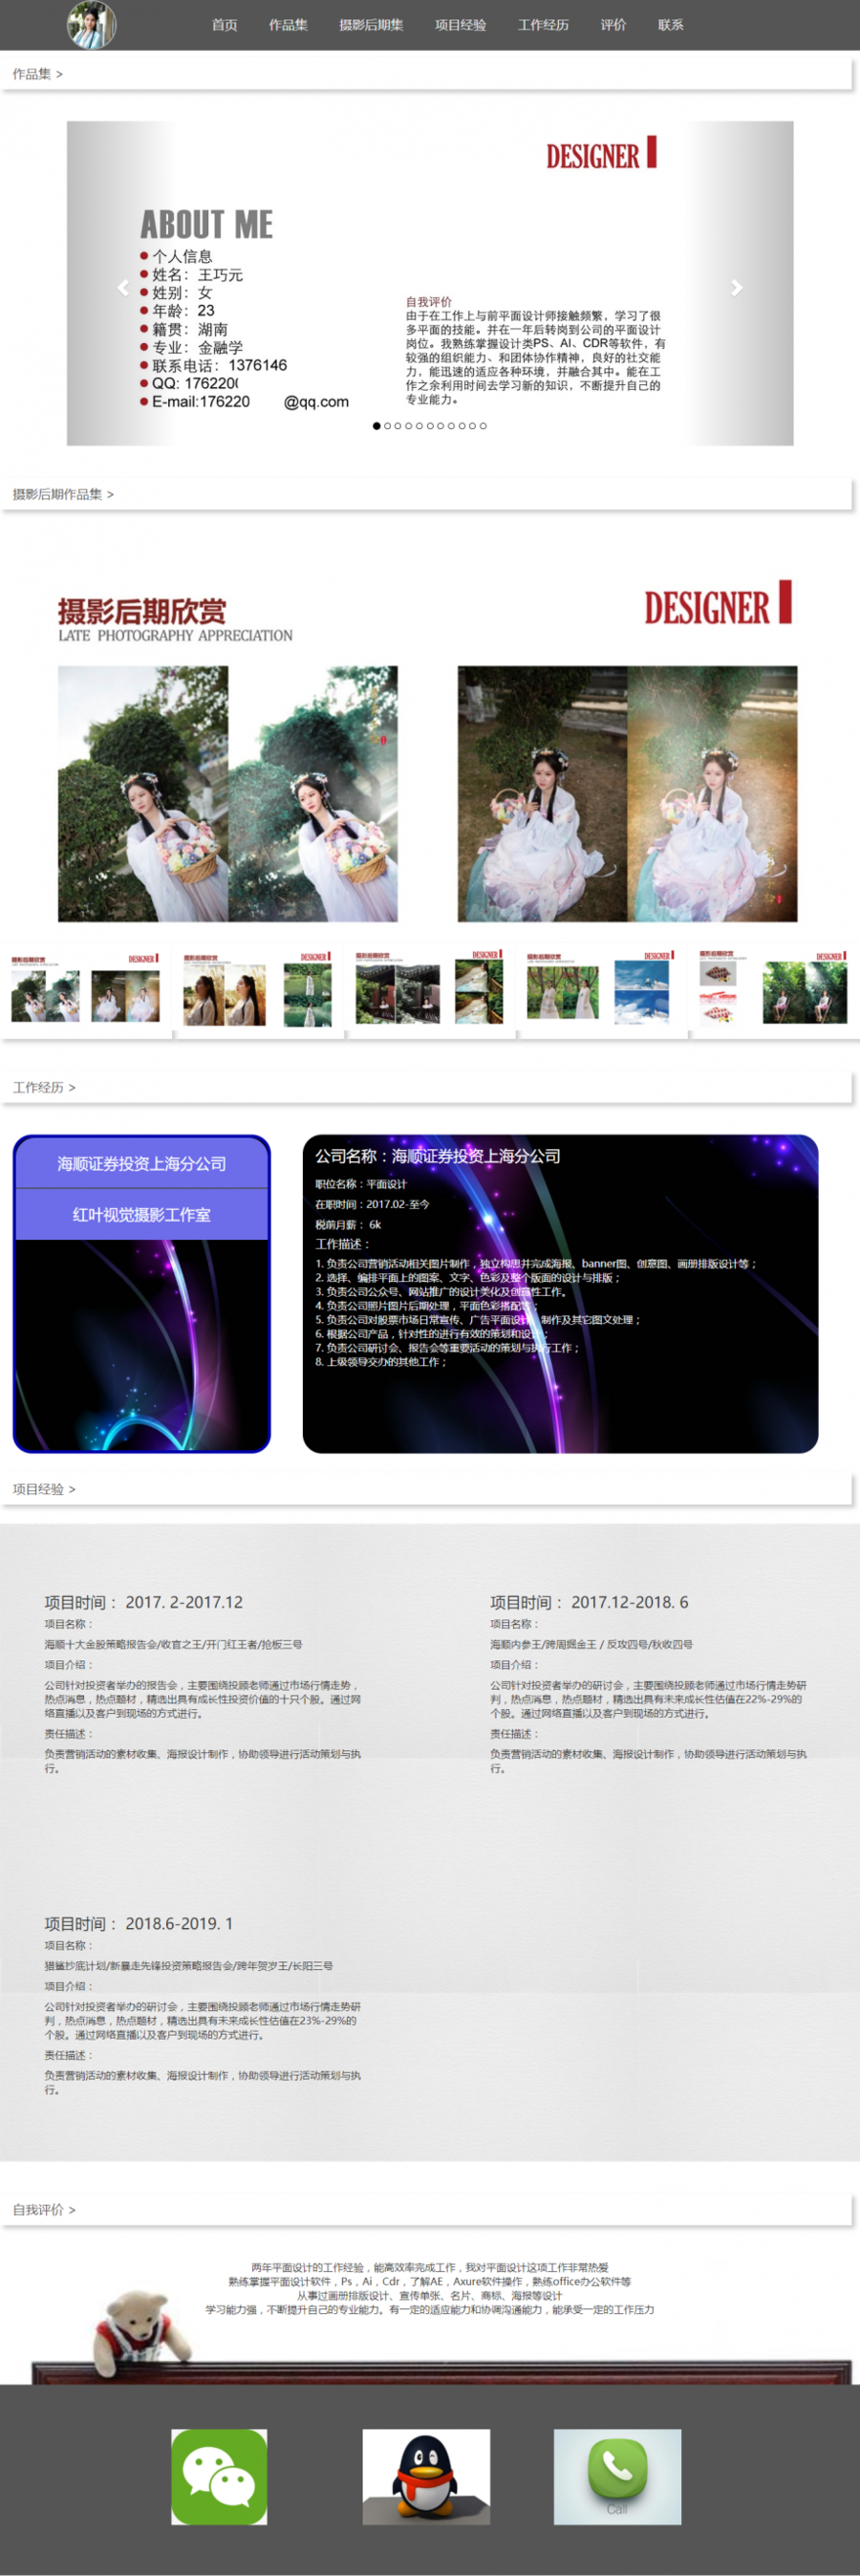 王巧元平面设计师个人html求职简历封面图